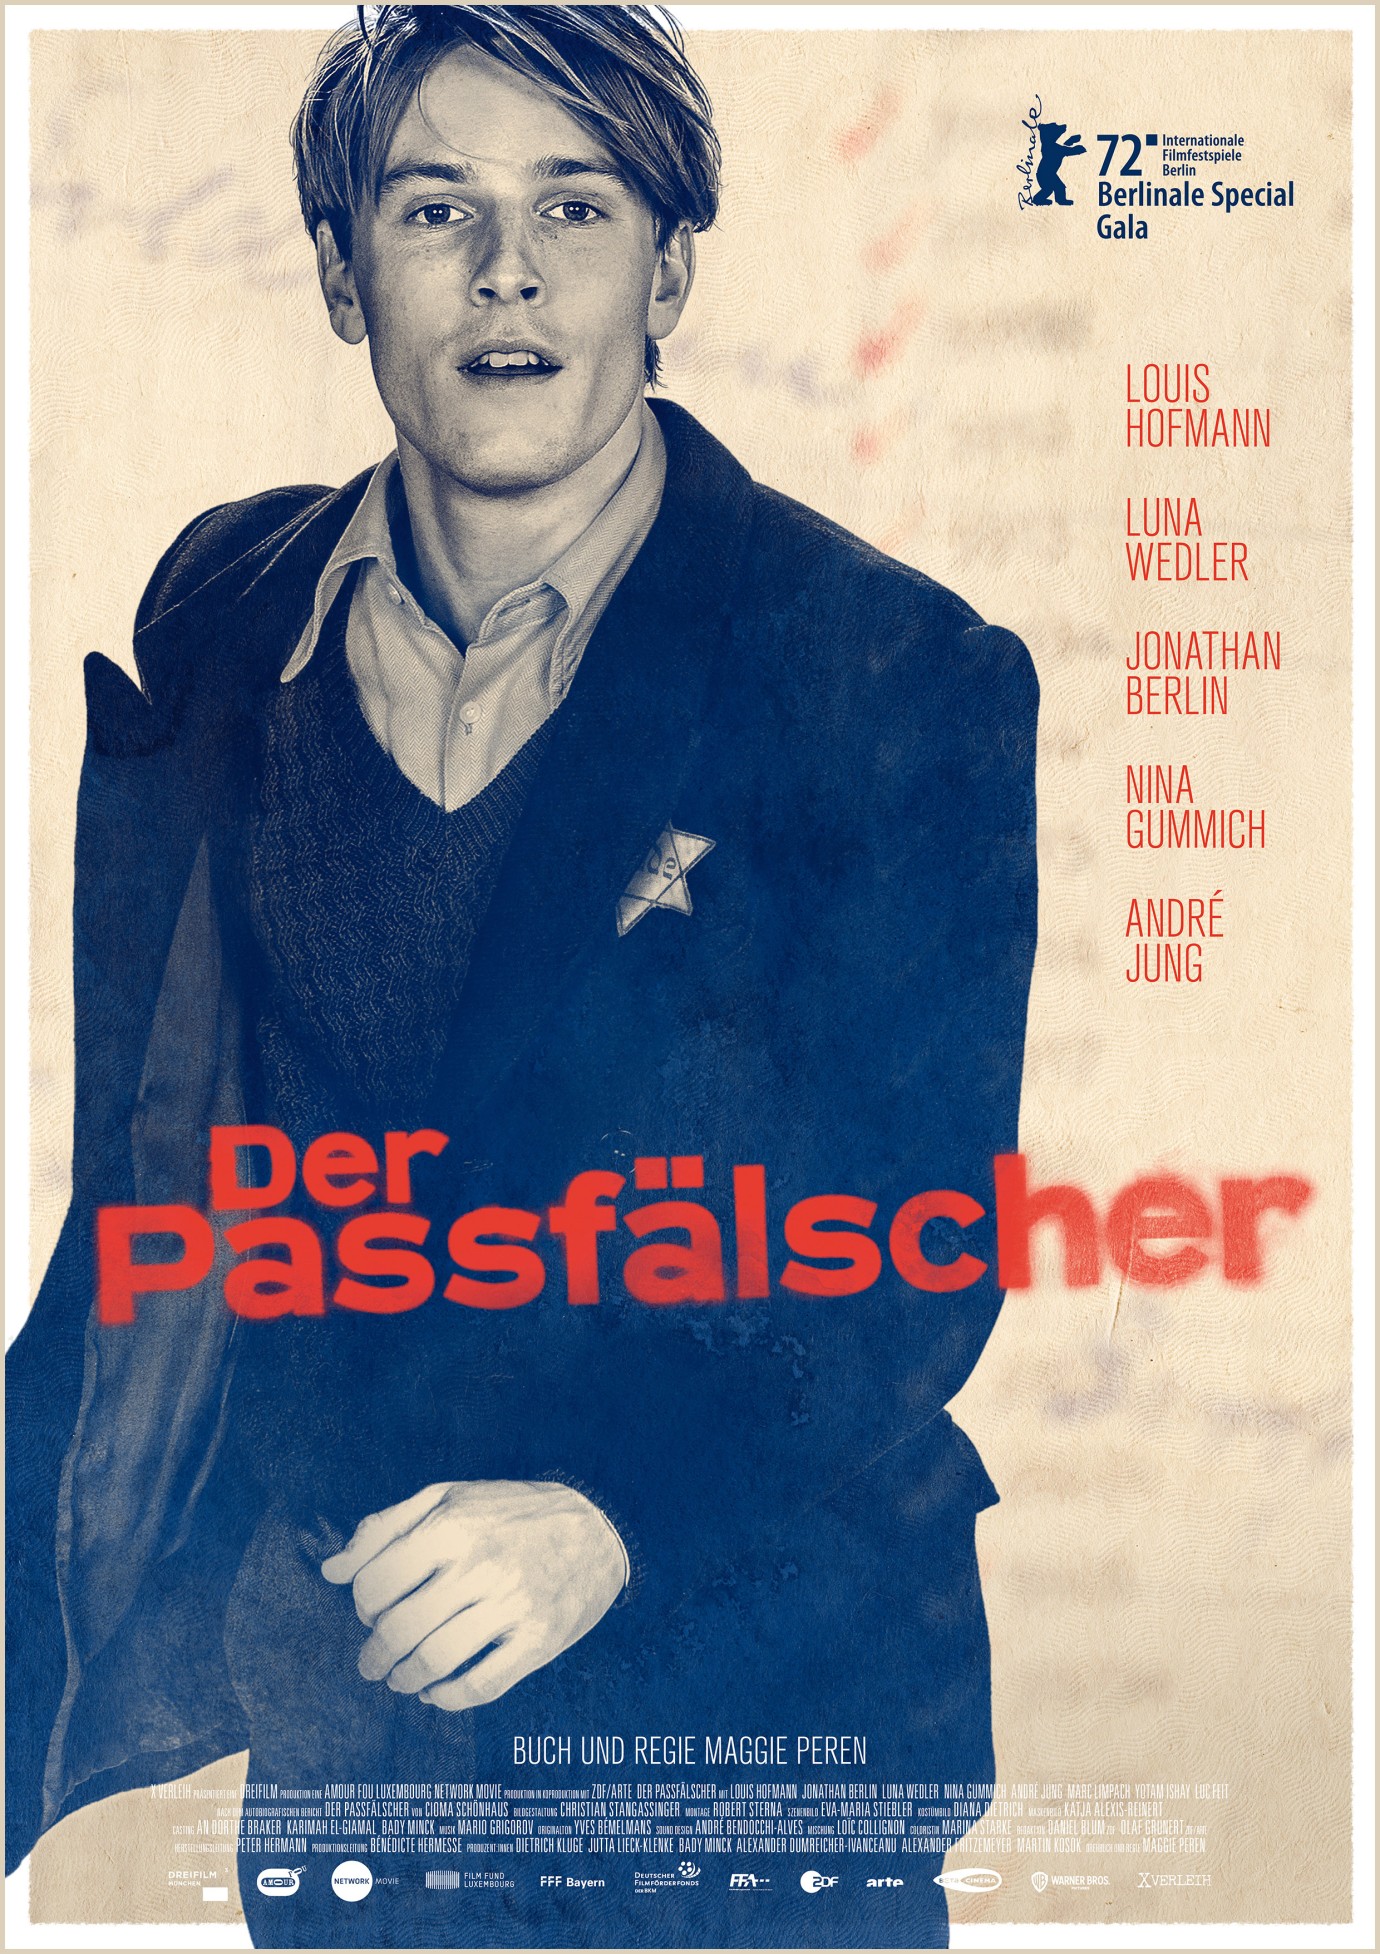 Berlinale 2022 Film Kritik: "Der Passfälscher"